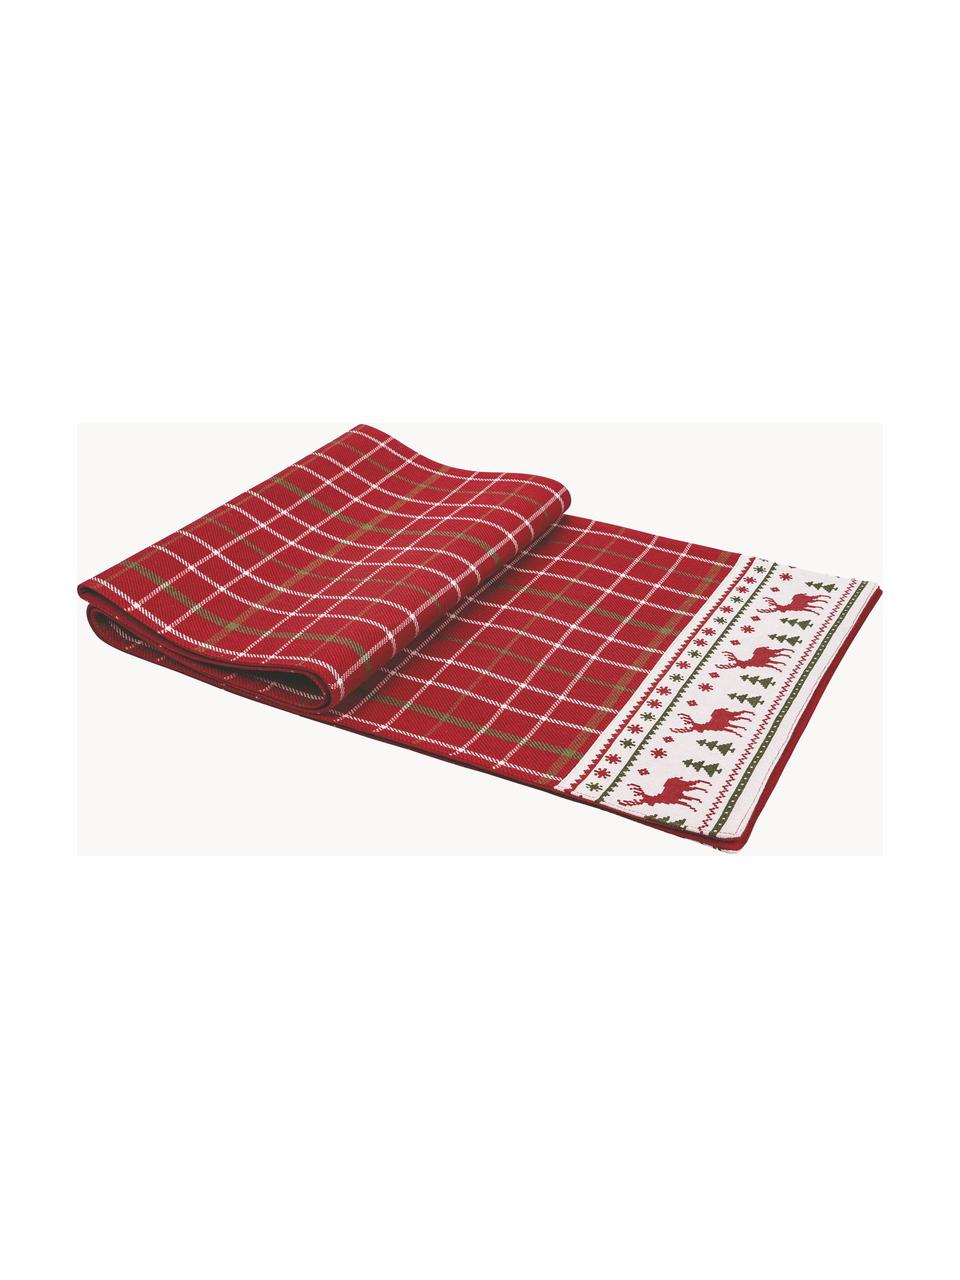 Baumwoll-Tischläufer Tartan mit Weihnachtsmuster, 100% Baumwolle, Rot, Mehrfarbig, B 33 x L 178 cm